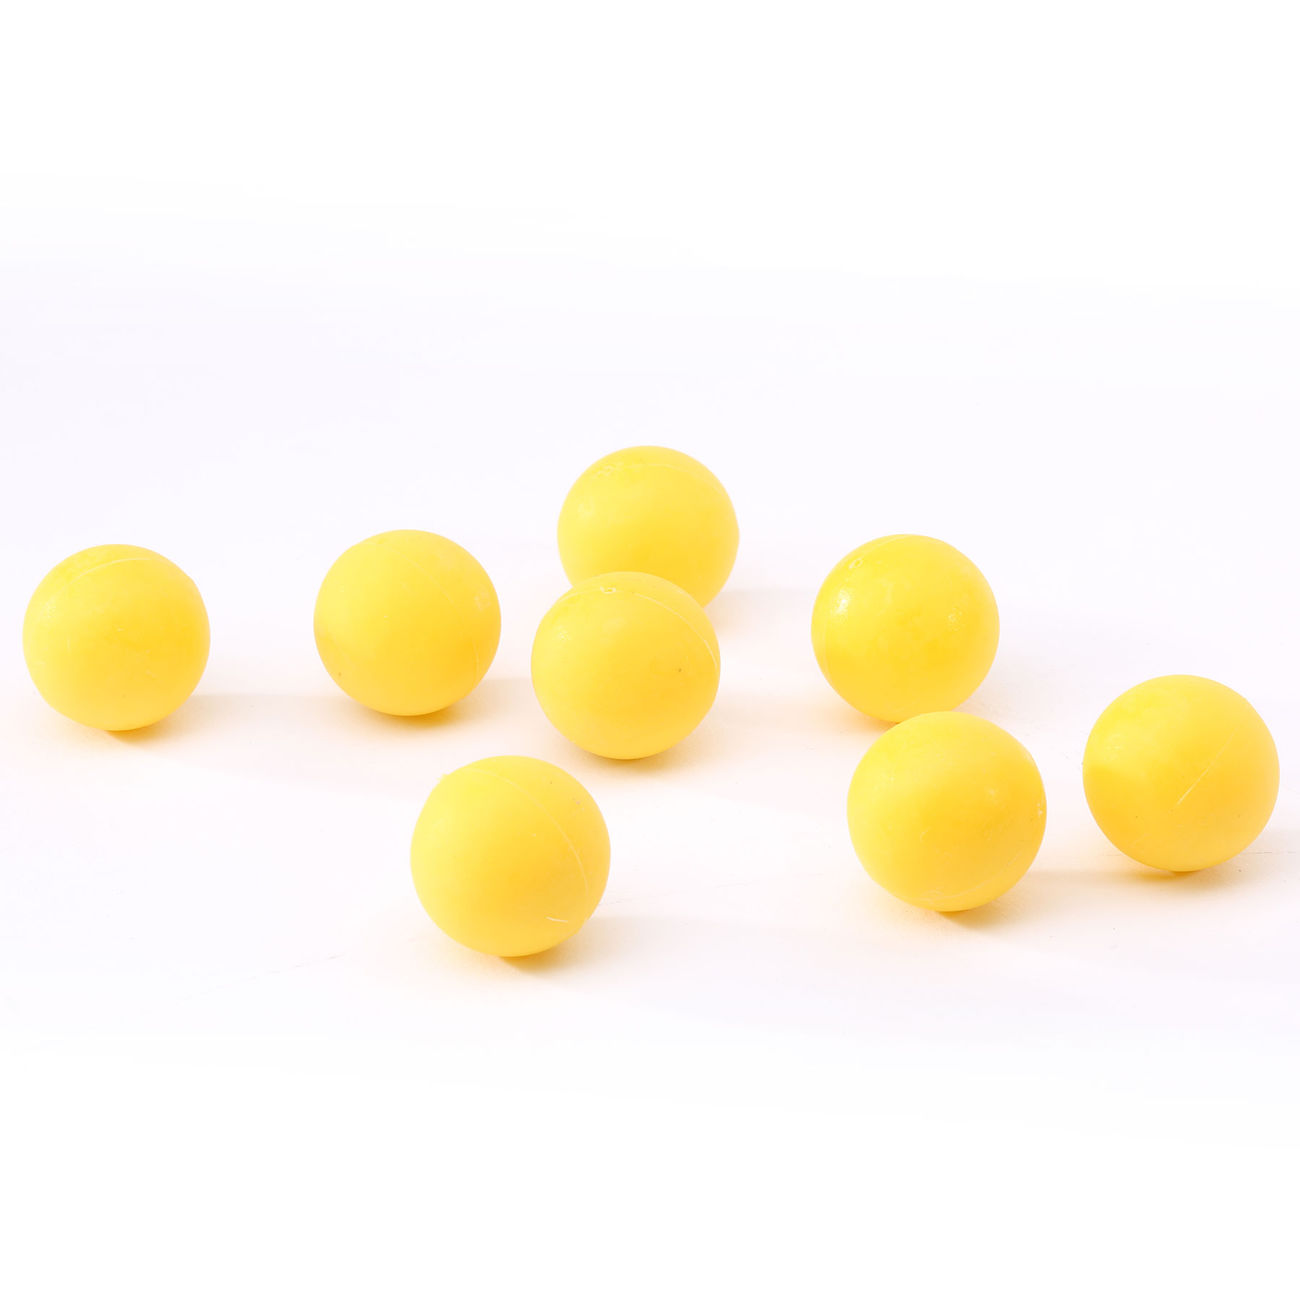 New Legion Gummigeschosse  Kal.68, Rubber Balls 10 Stück gelb Bild 1